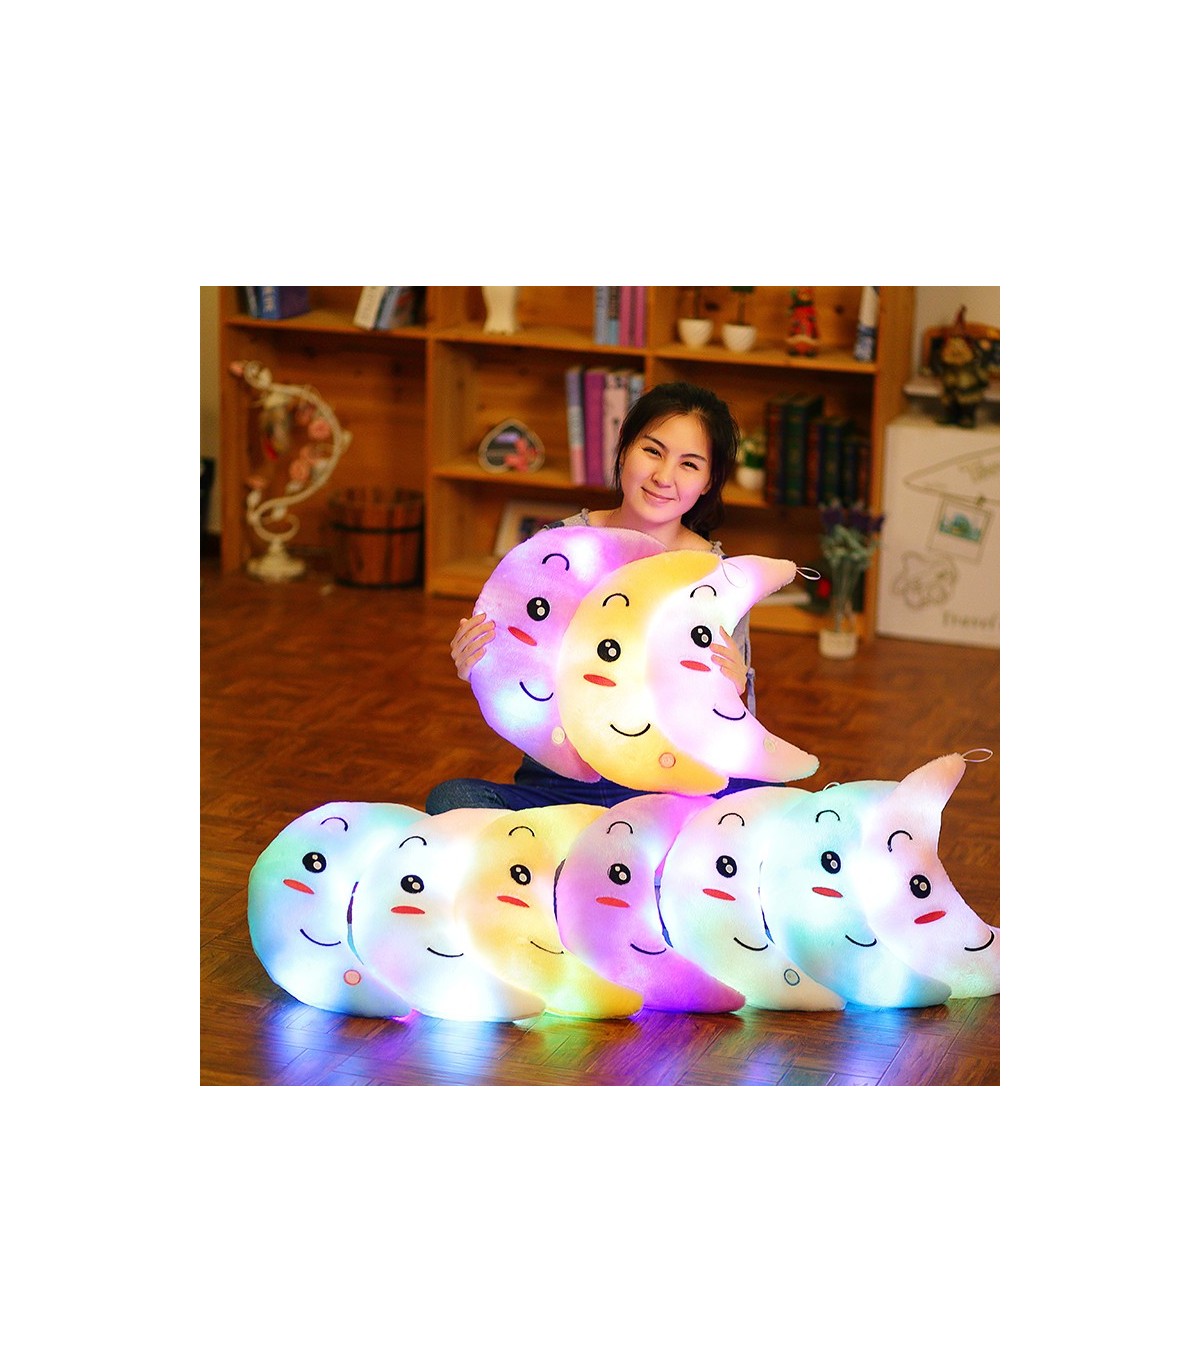 Juguete de peluche con iluminación LED de 34cm para niños, cojín de estrellas creativo de peluche con iluminación LED para niños